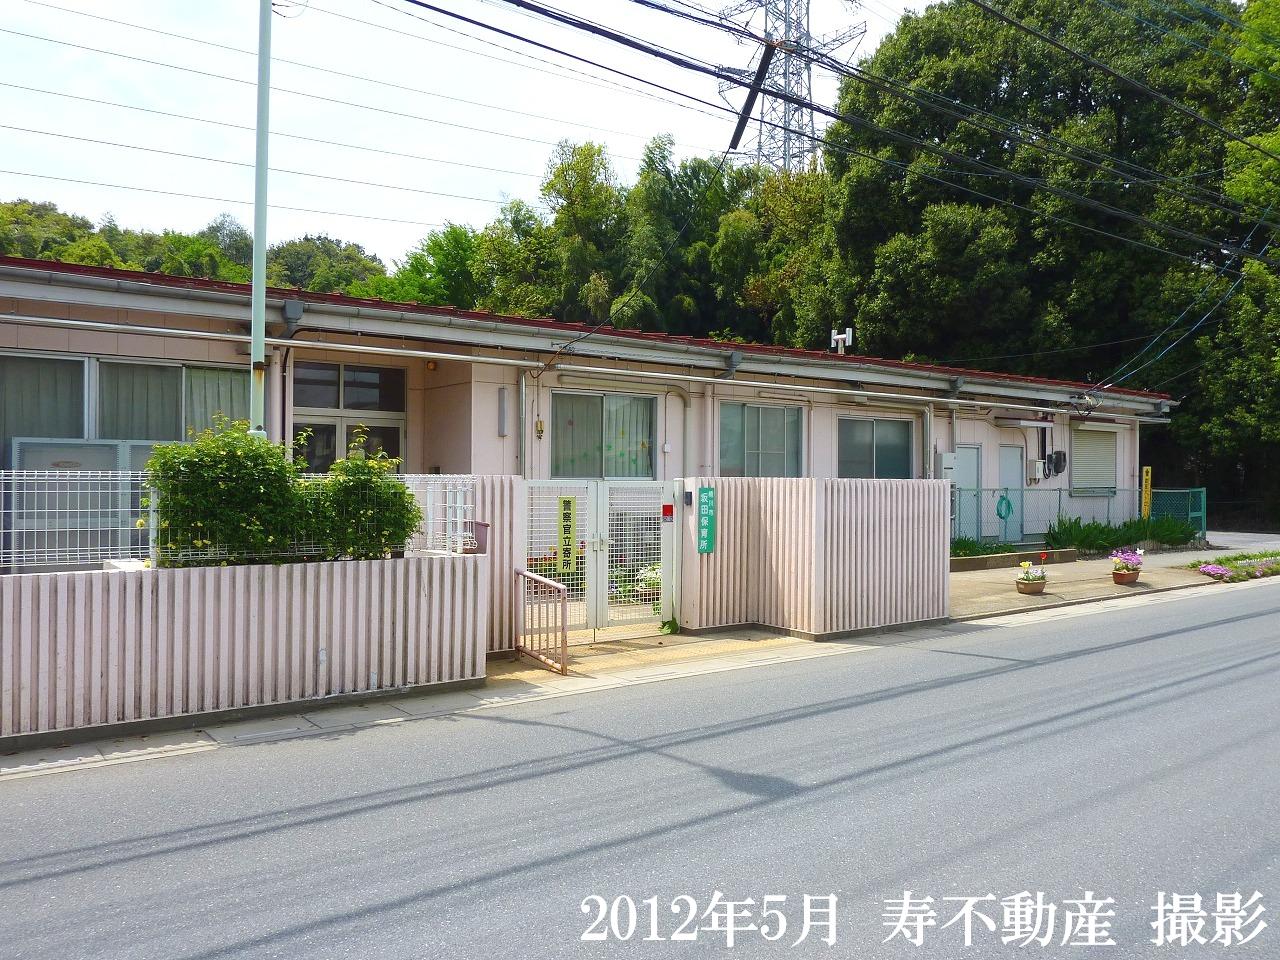 kindergarten ・ Nursery. Okegawa Sakata nursery school (kindergarten ・ 580m to the nursery)